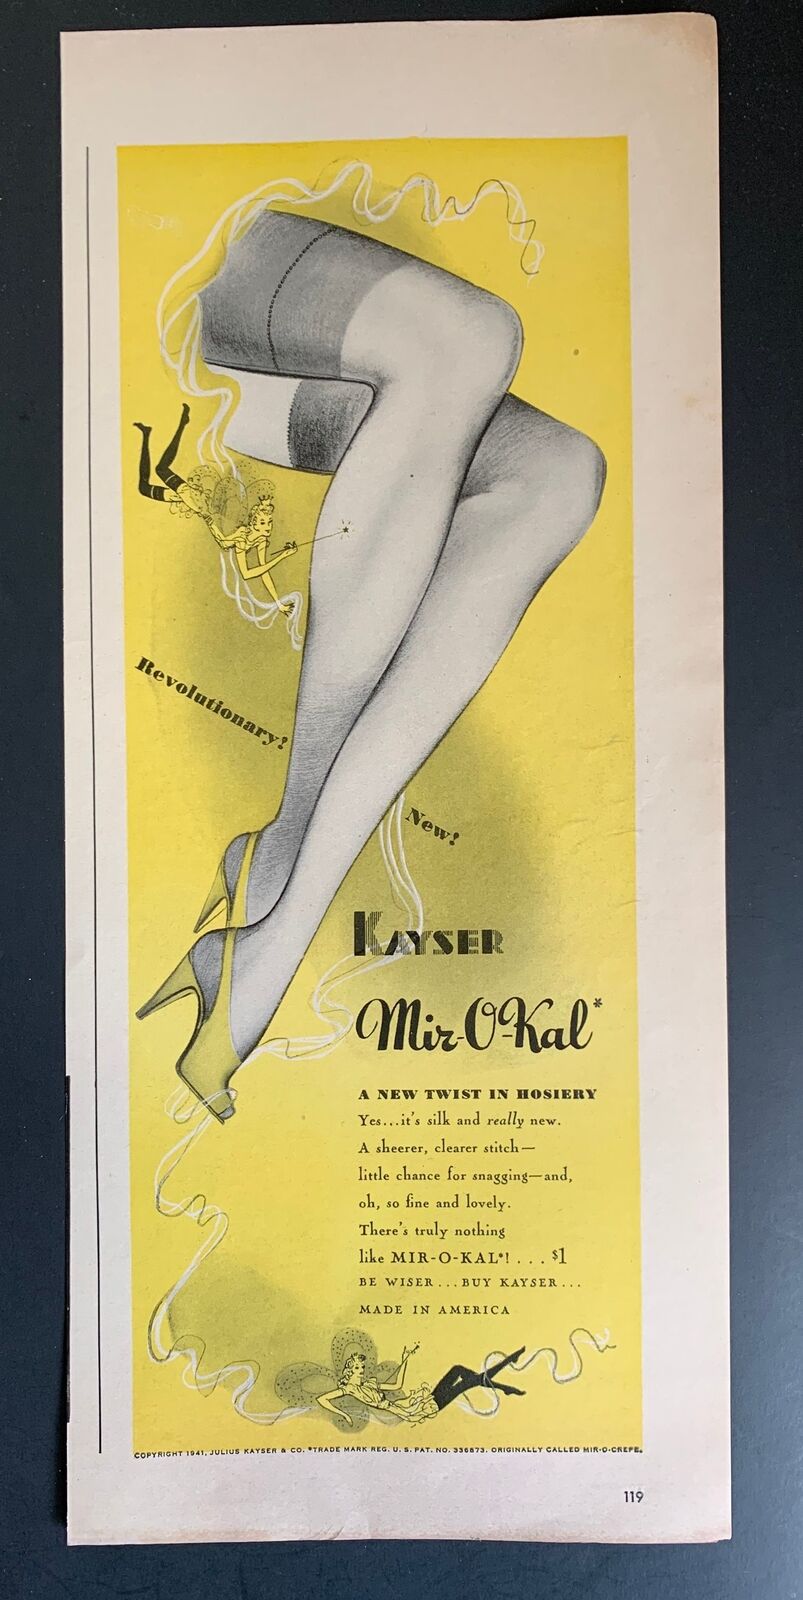 Vintage 1941 Kayser Hosiery Ad